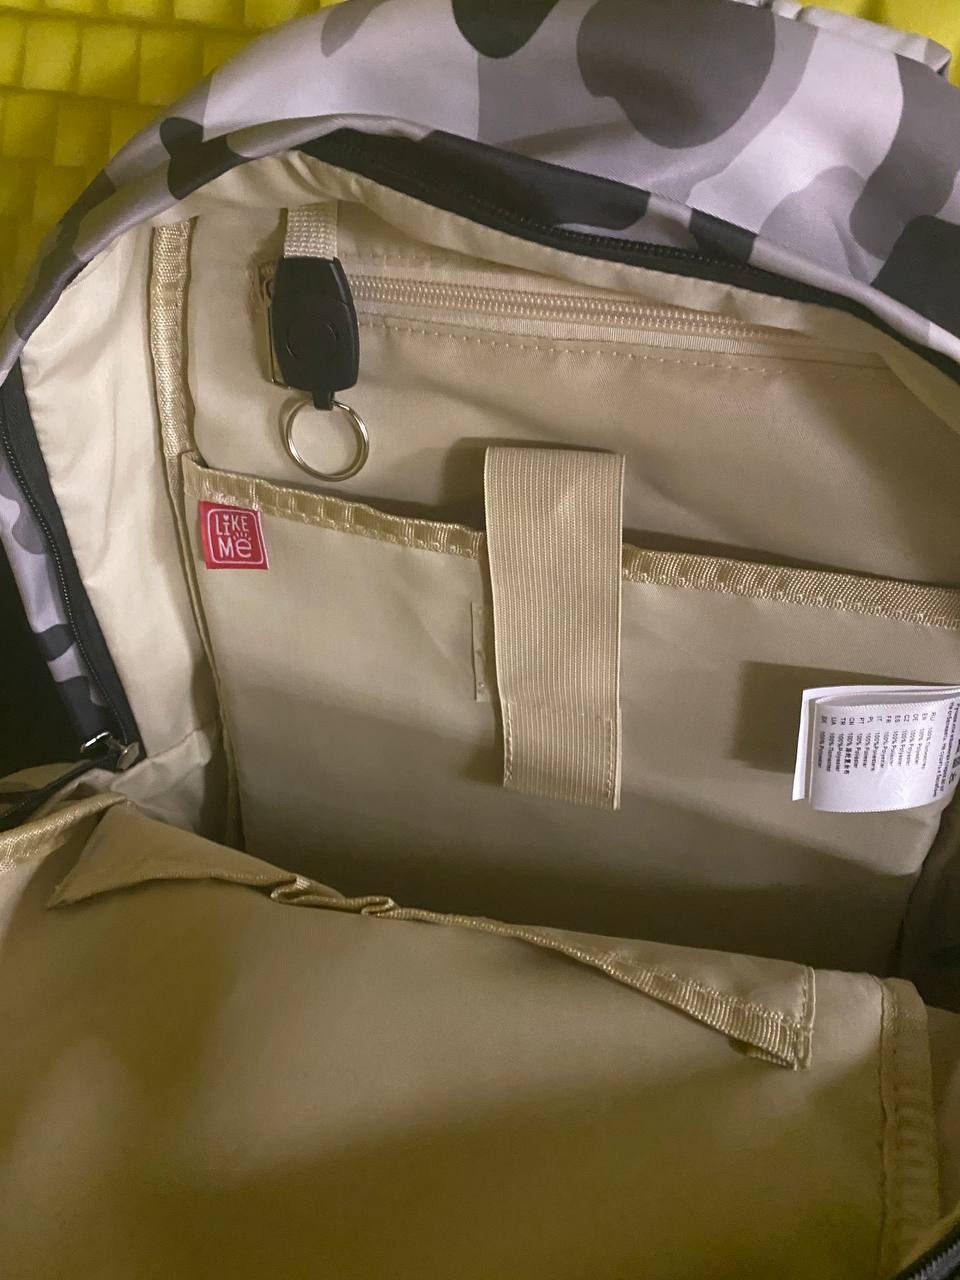 Рюкзаки Like me - Стильный рюкзак для современного парня